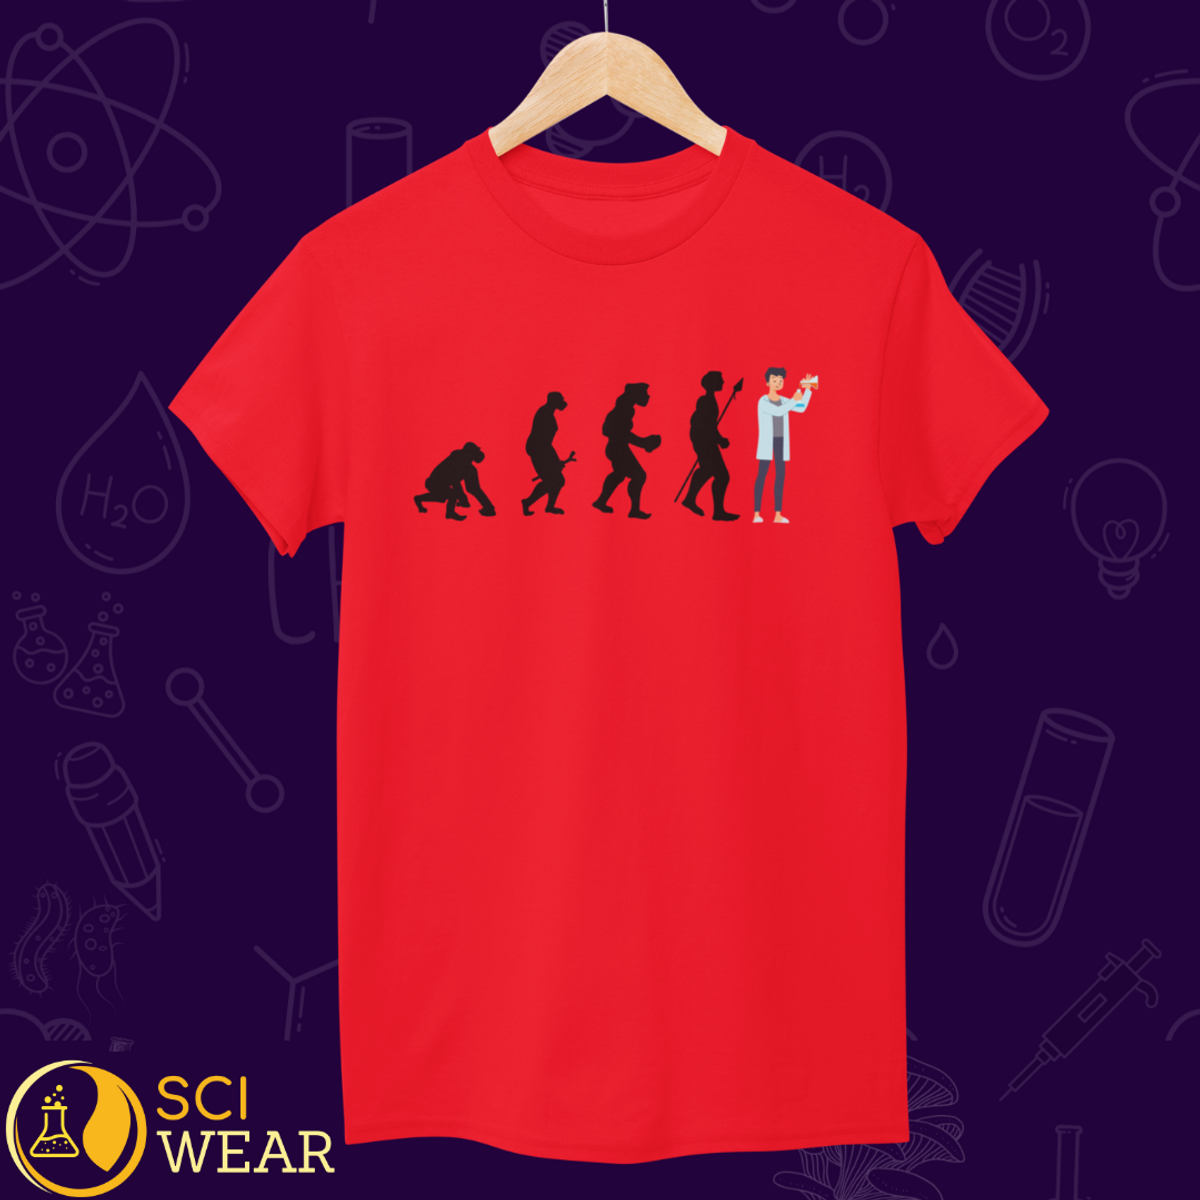 Nome do produto: Evolução humana - T-shirt